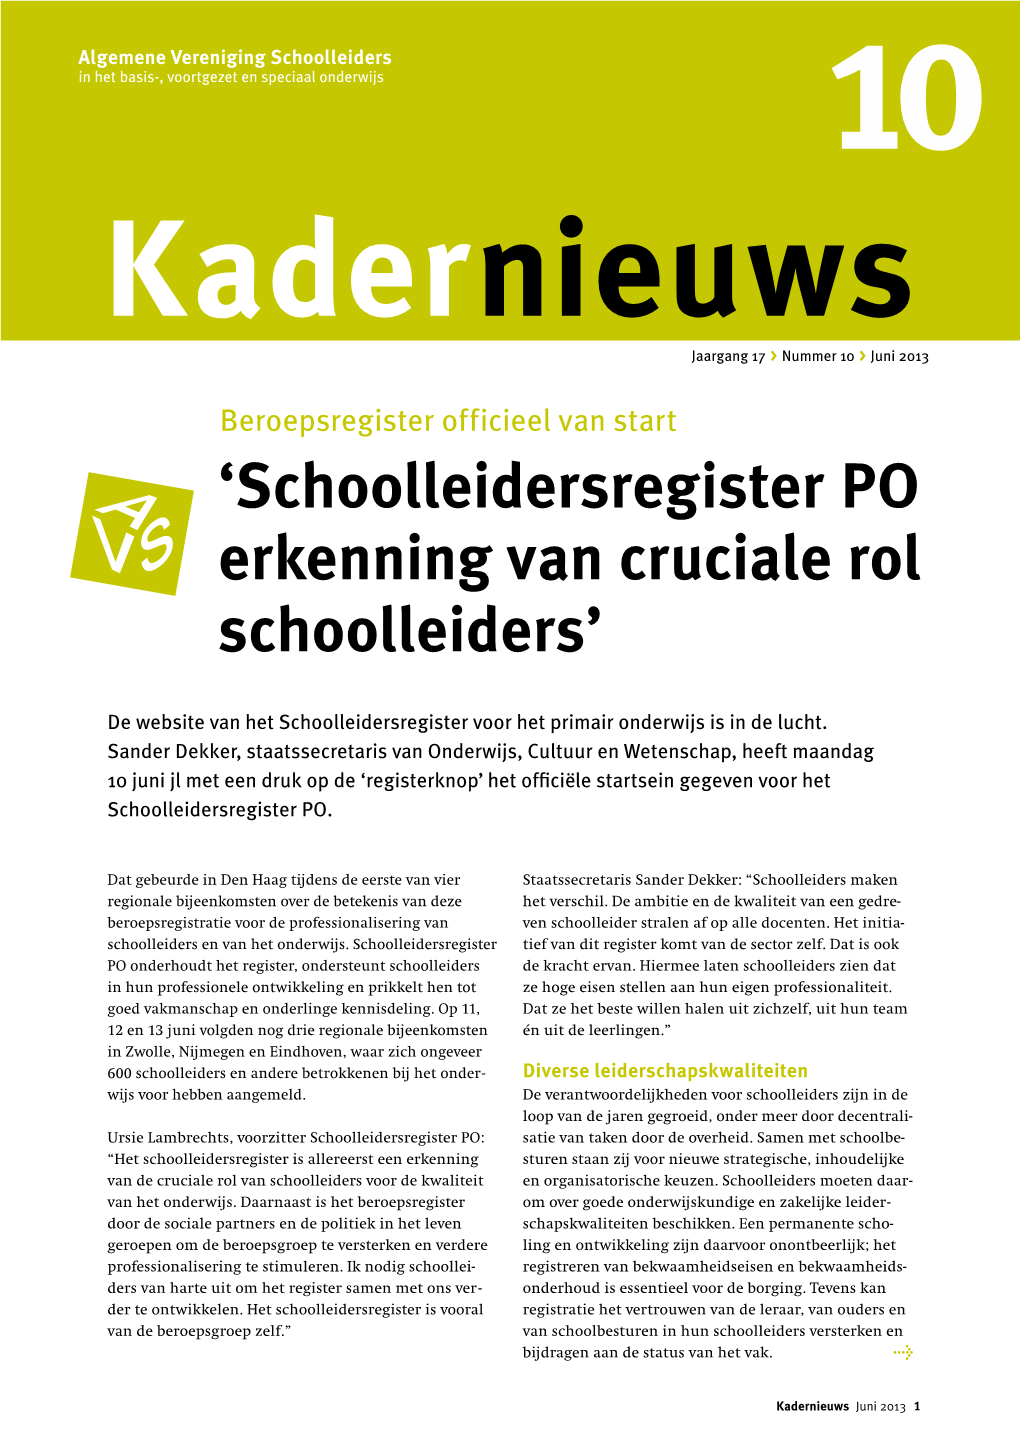 'Schoolleidersregister PO Erkenning Van Cruciale Rol Schoolleiders'